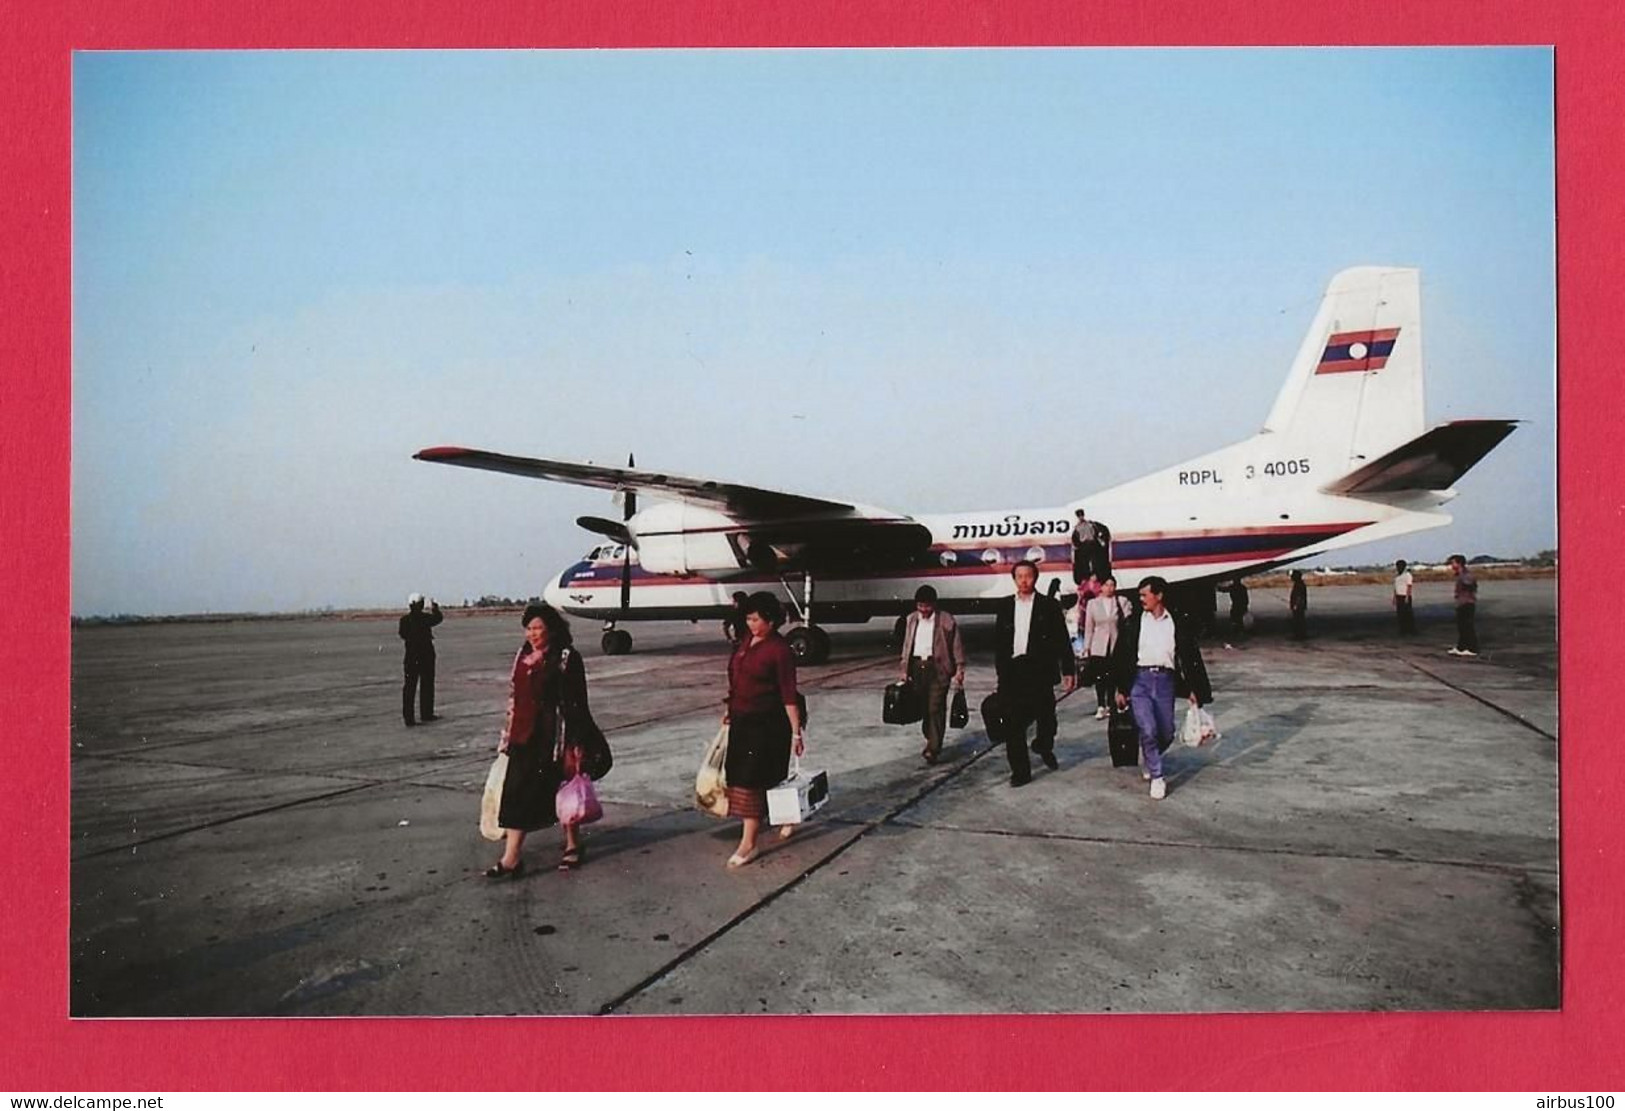 BELLE PHOTO REPRODUCTION AVION PLANE LAOS - LAO AIRLINES AVION XIAN Y-7 PASSAGERS SUR LE TARMAC - Luftfahrt